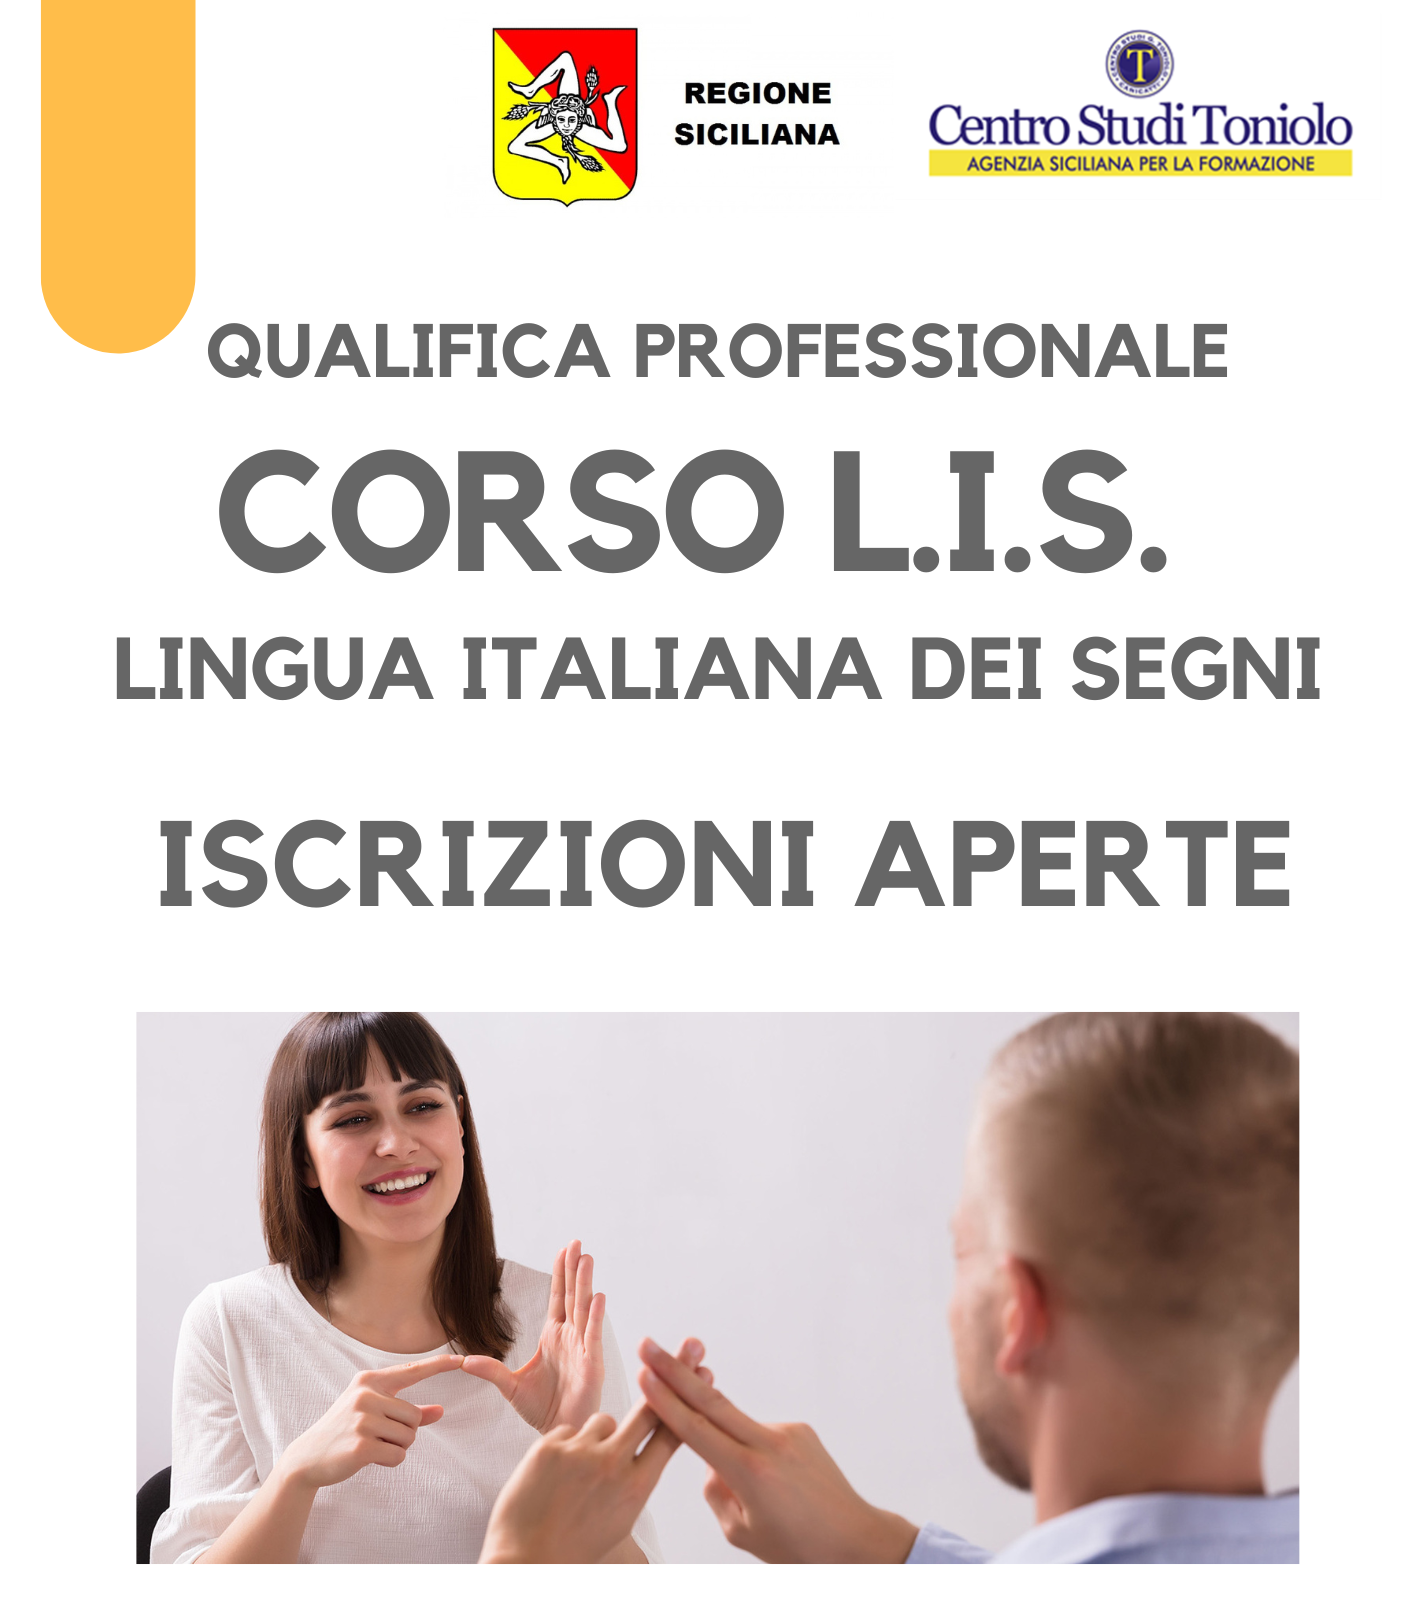 QUALIFICA PROFESSIONALE CORSO L.I.S. (Lingua Italiana dei Segni)